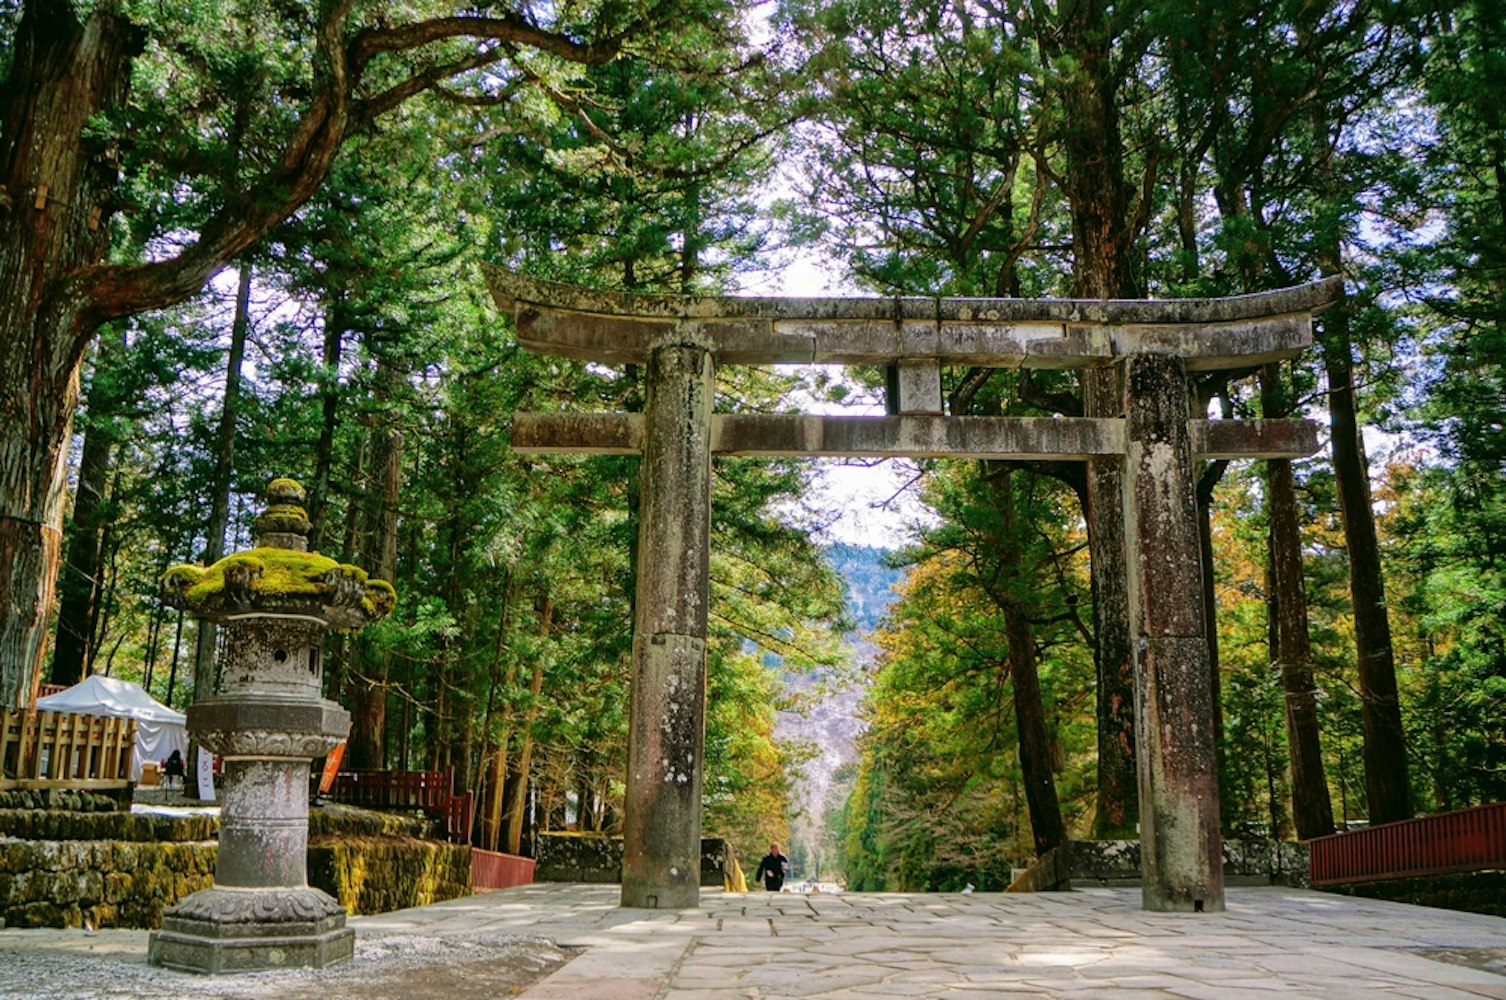 The Stone Torii Gate